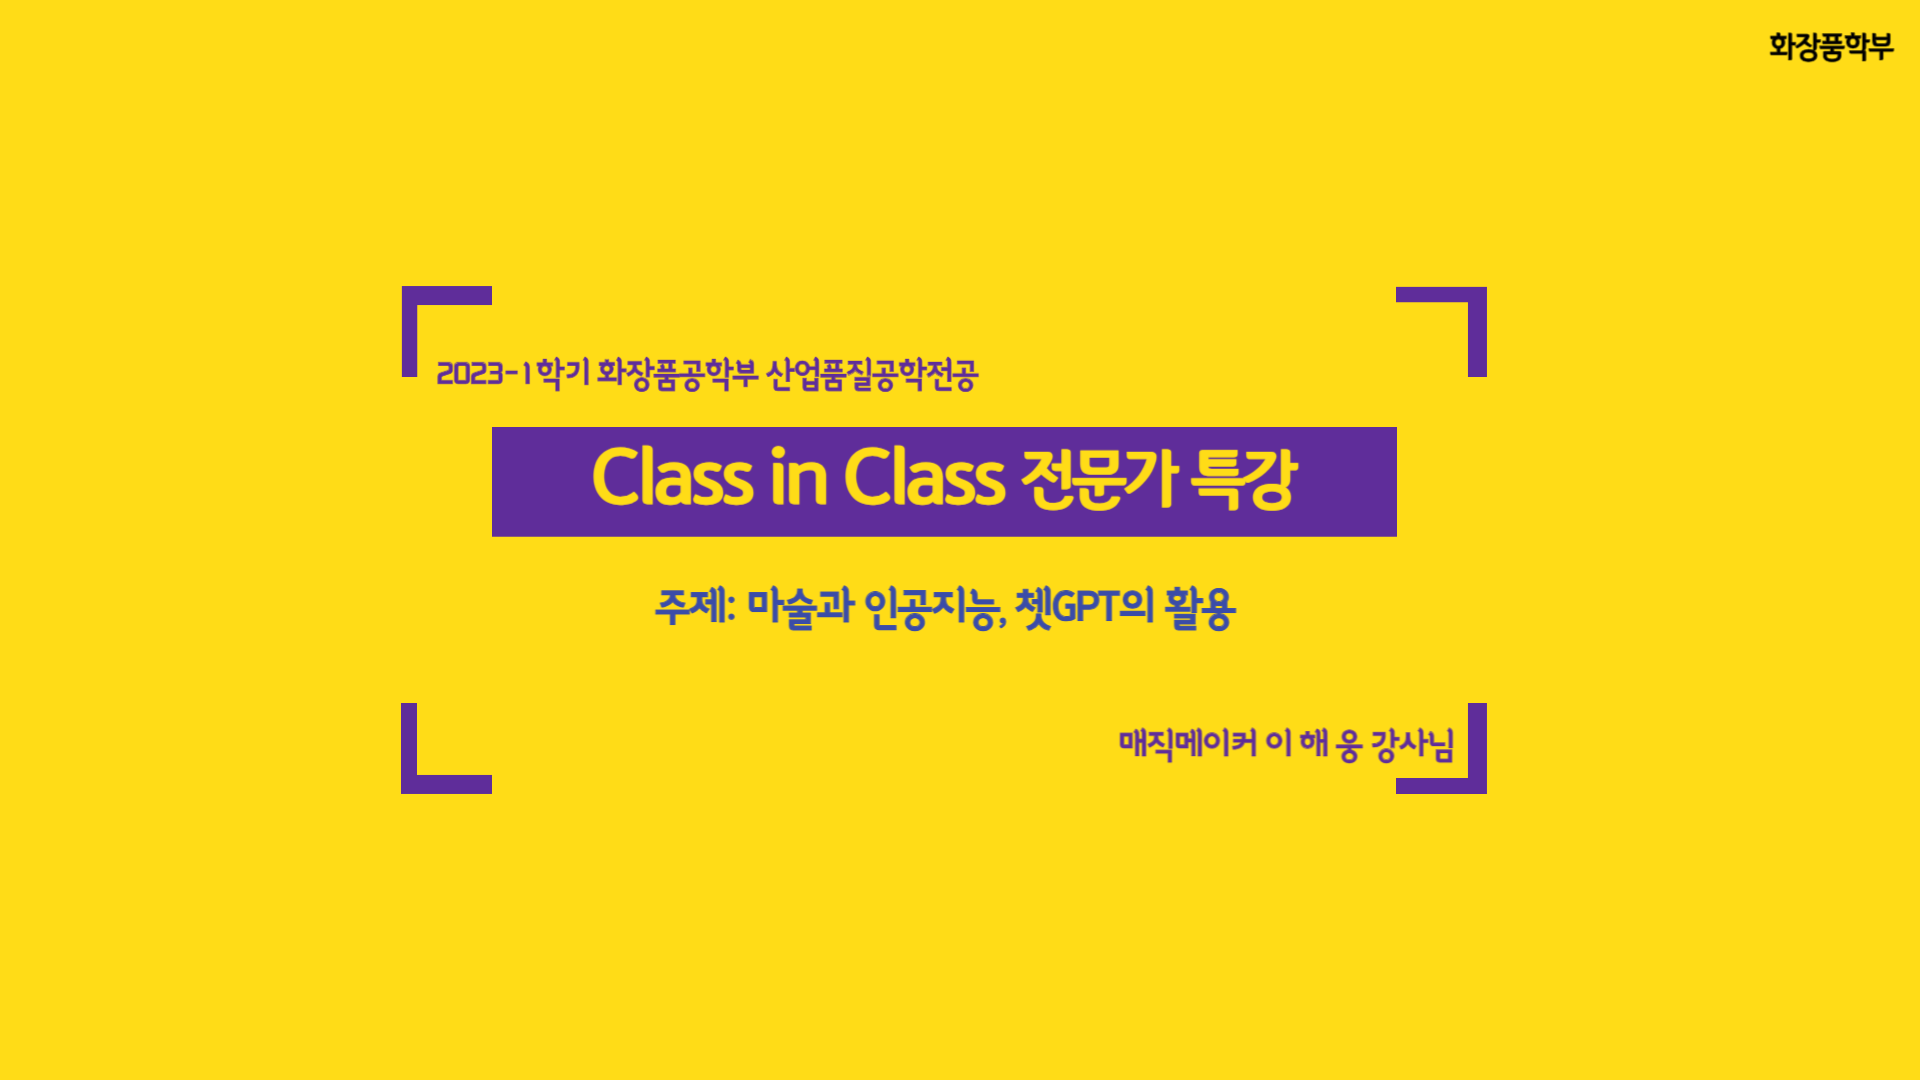 화장품학부 2023-1학기 Class in Class